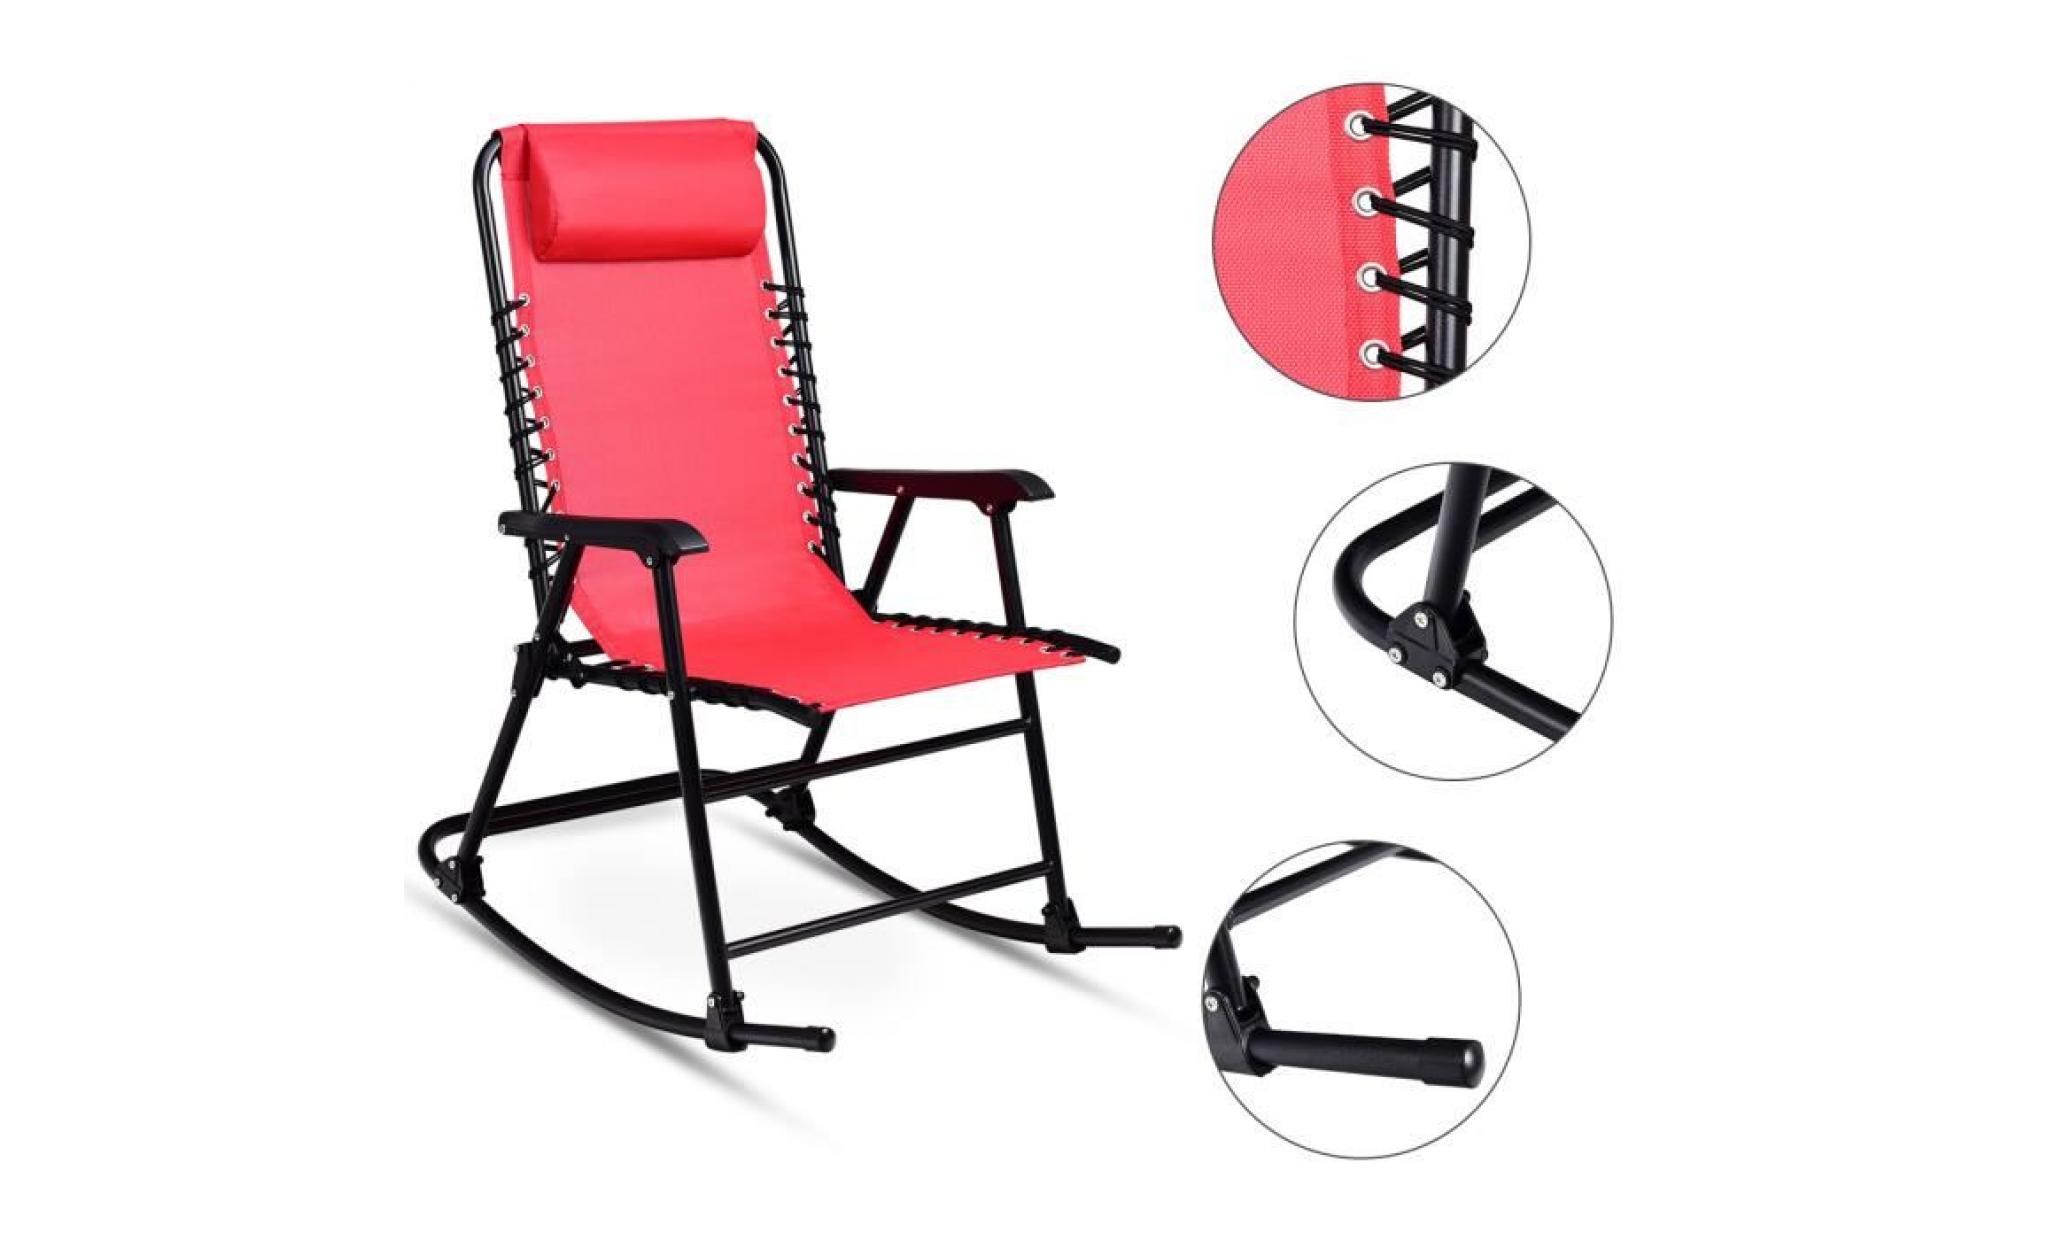 costway chaise à bascule en fer fauteuil à bascule en fer inclinable 86 x 63 x 95 cm balcon jardin salle fauteuil berçante beige pas cher